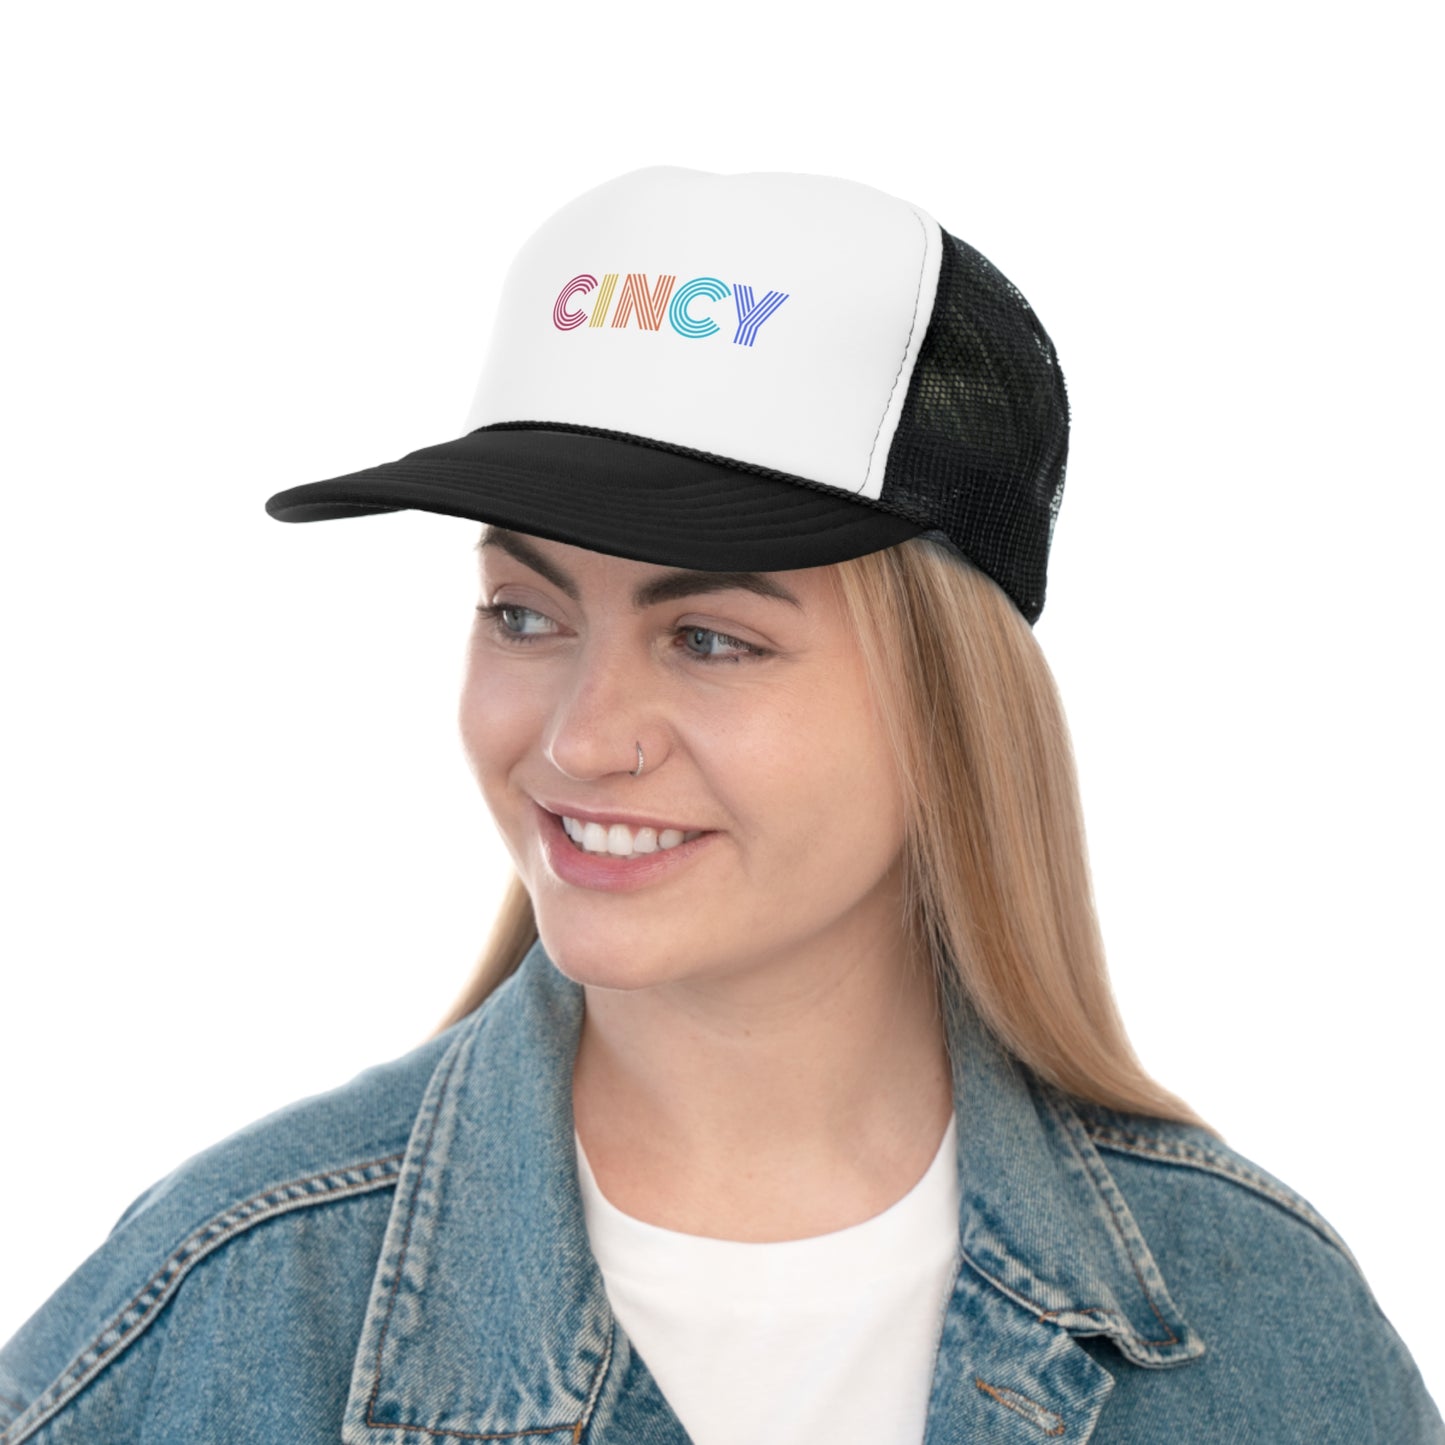 CINCY - Trucker Caps